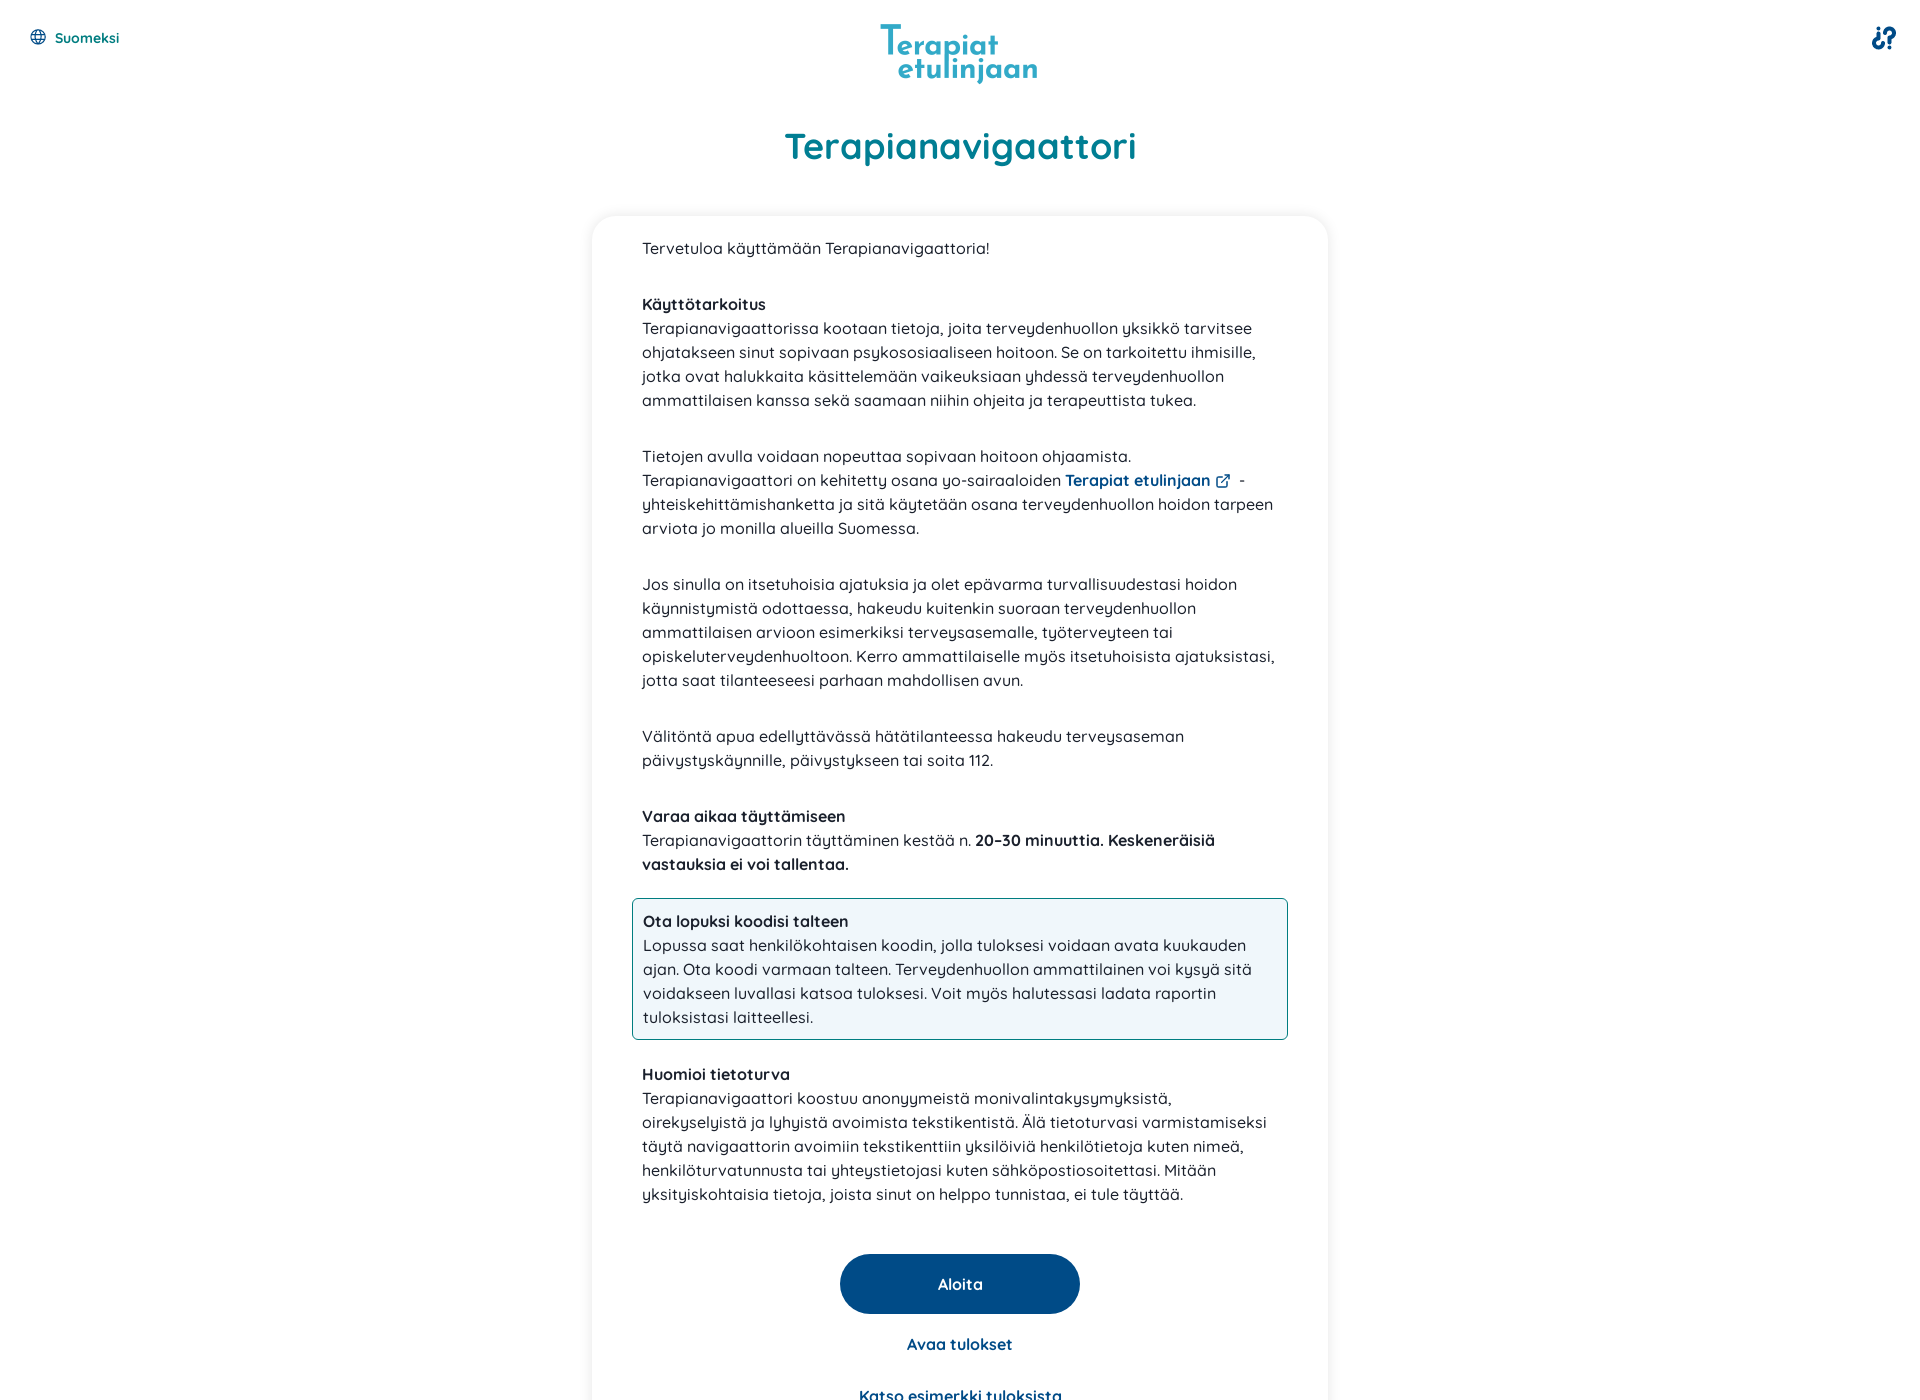 Skärmdump för terapianavigaattori.fi